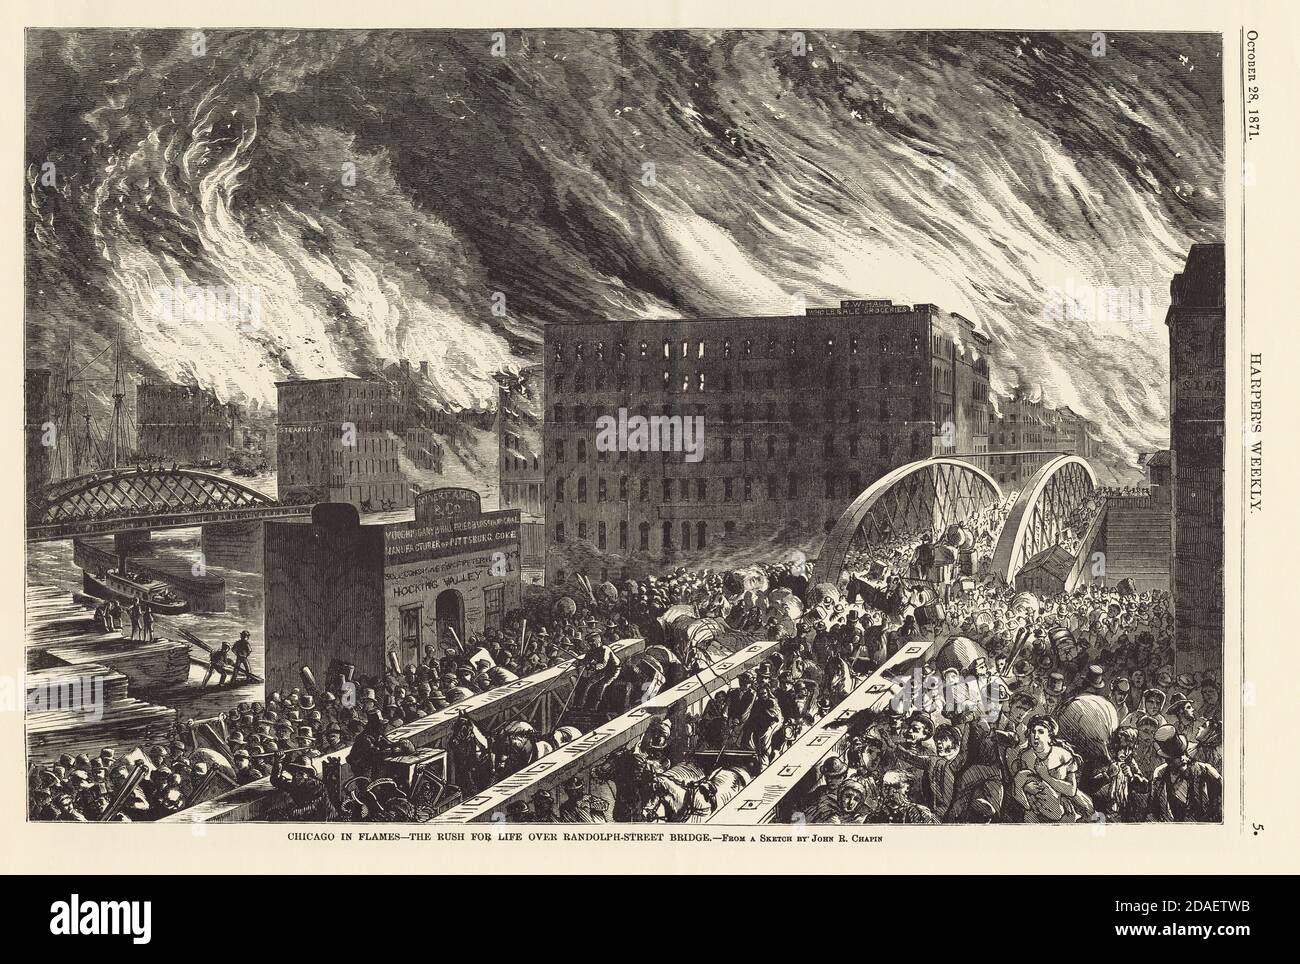 Illustration de la foule de personnes essayant de s'échapper au-dessus du pont de Randolph Street pendant le feu de Chicago de 1871. De Harper's Weekly. Banque D'Images